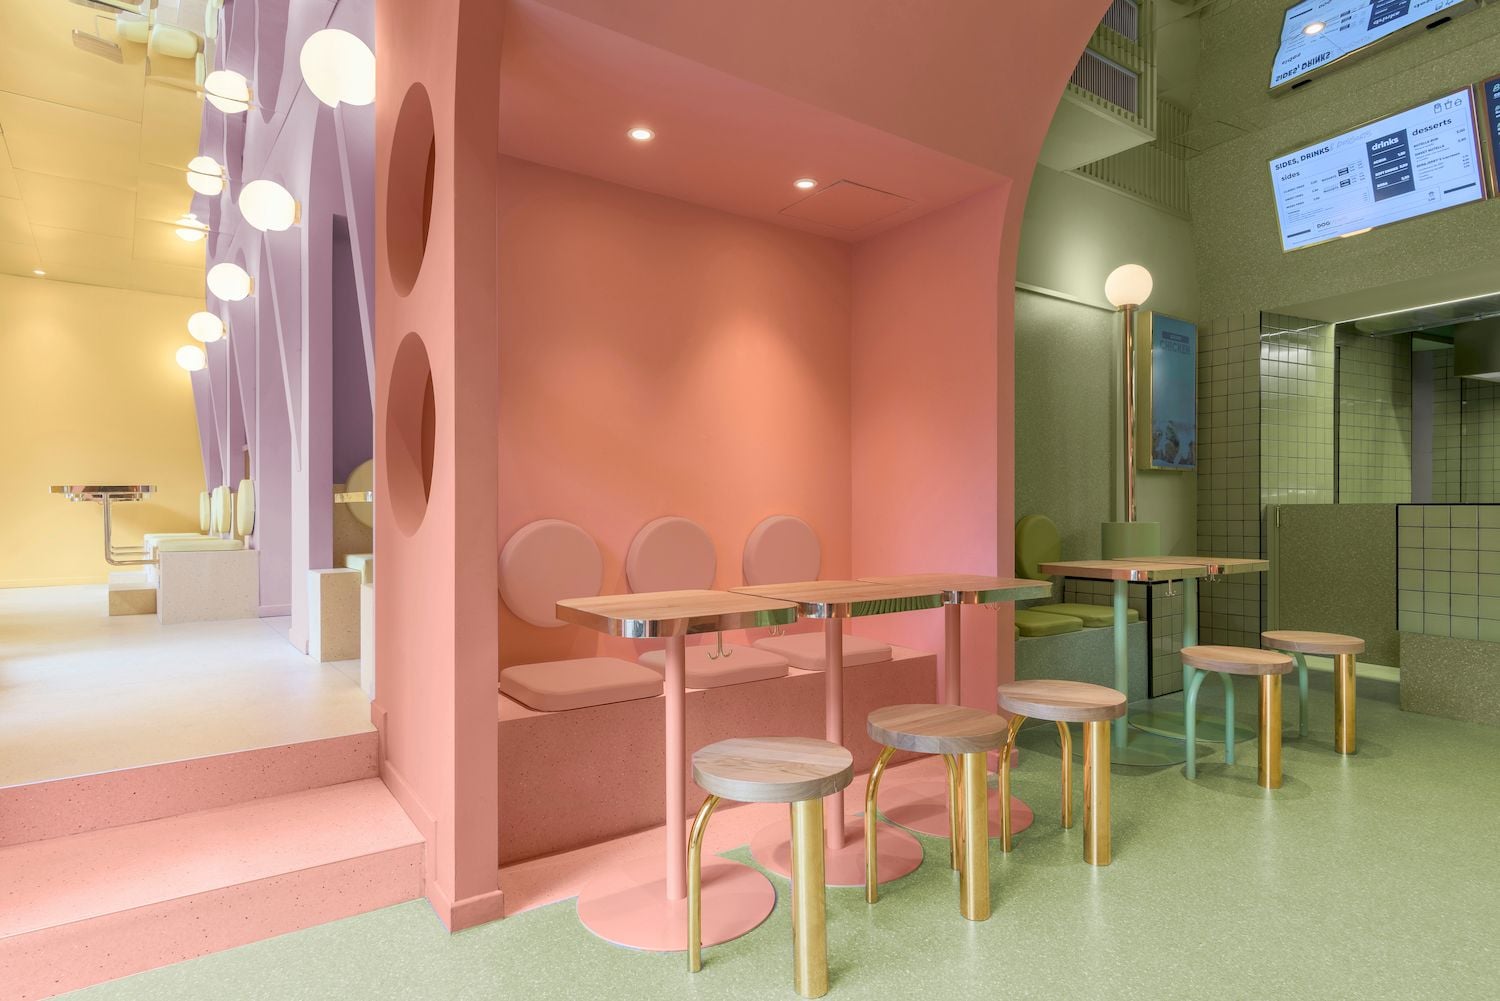 Multicolored pastel spaces inside the Masquespacio-designed Bun burger restaurant in Milan.